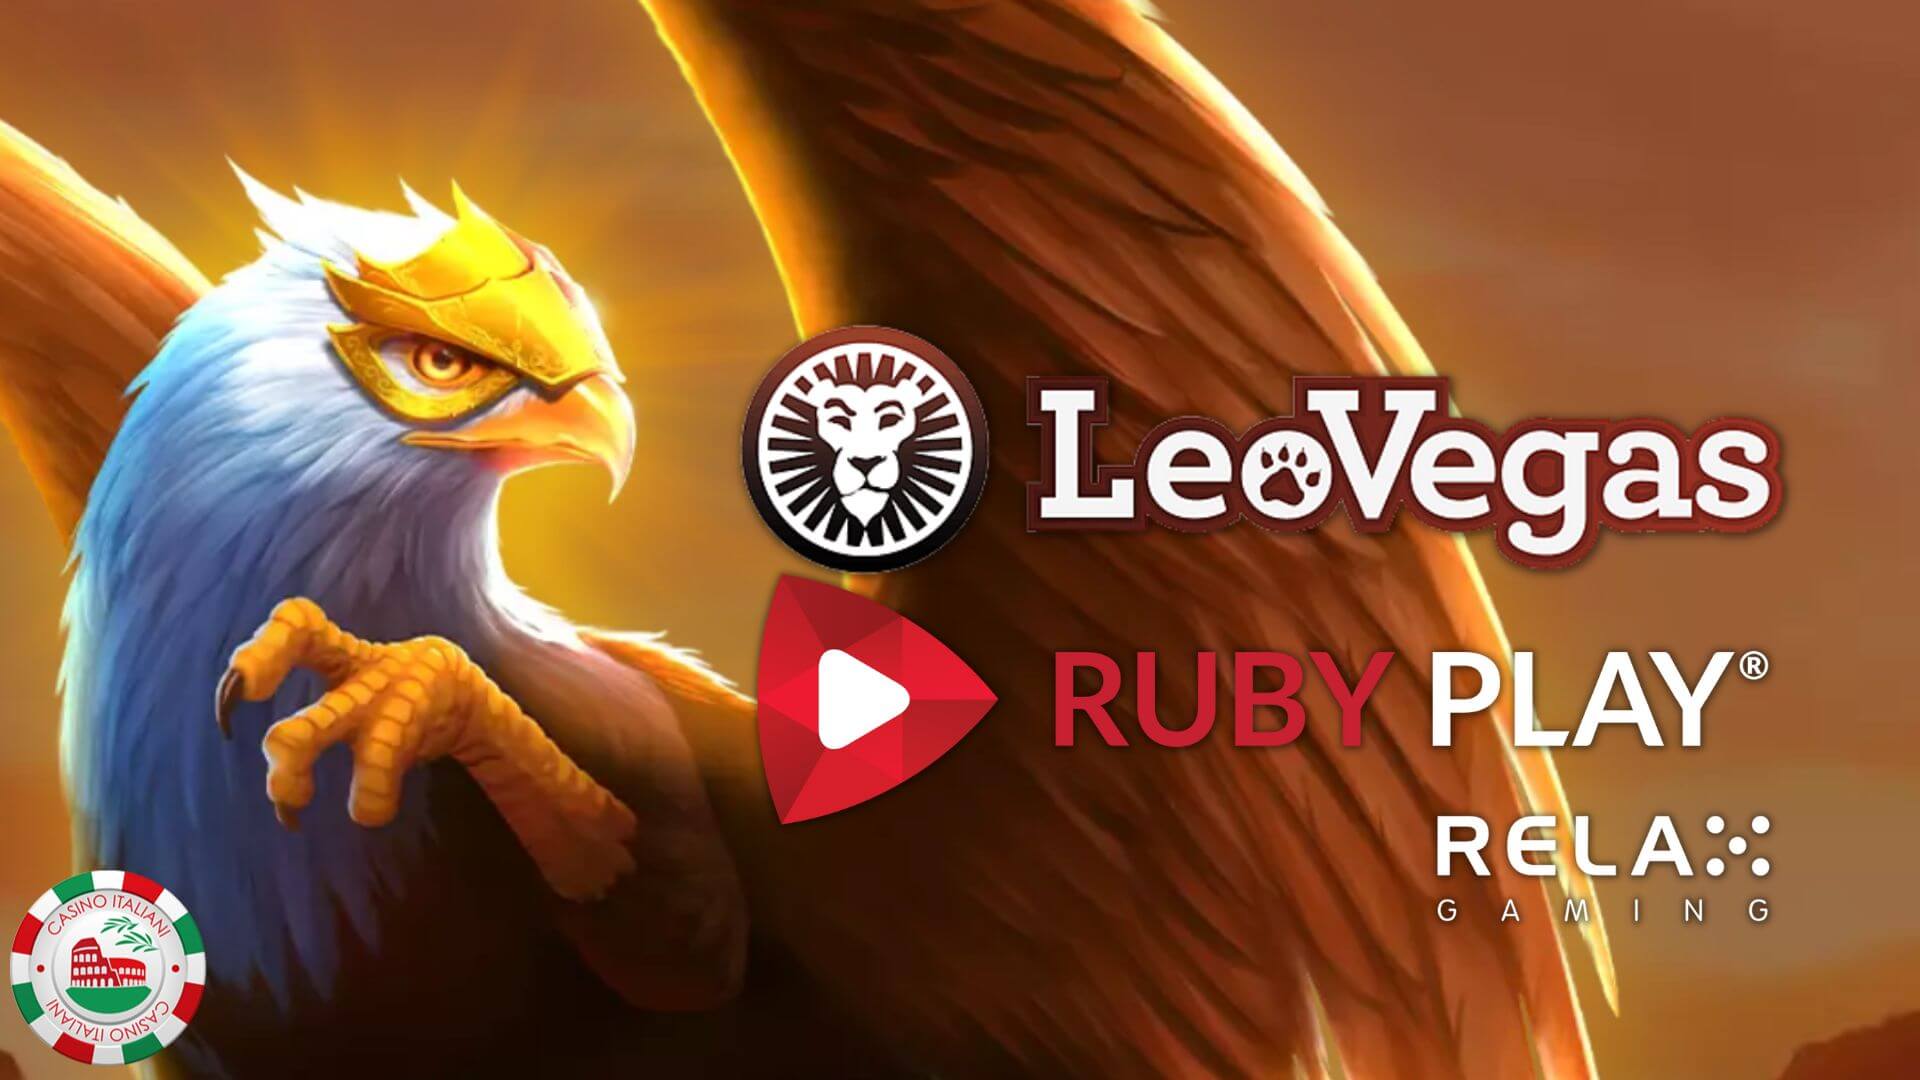 Nuova alleanza nell’universo iGaming: le slot RubyPlay su LeoVegas grazie a Relax